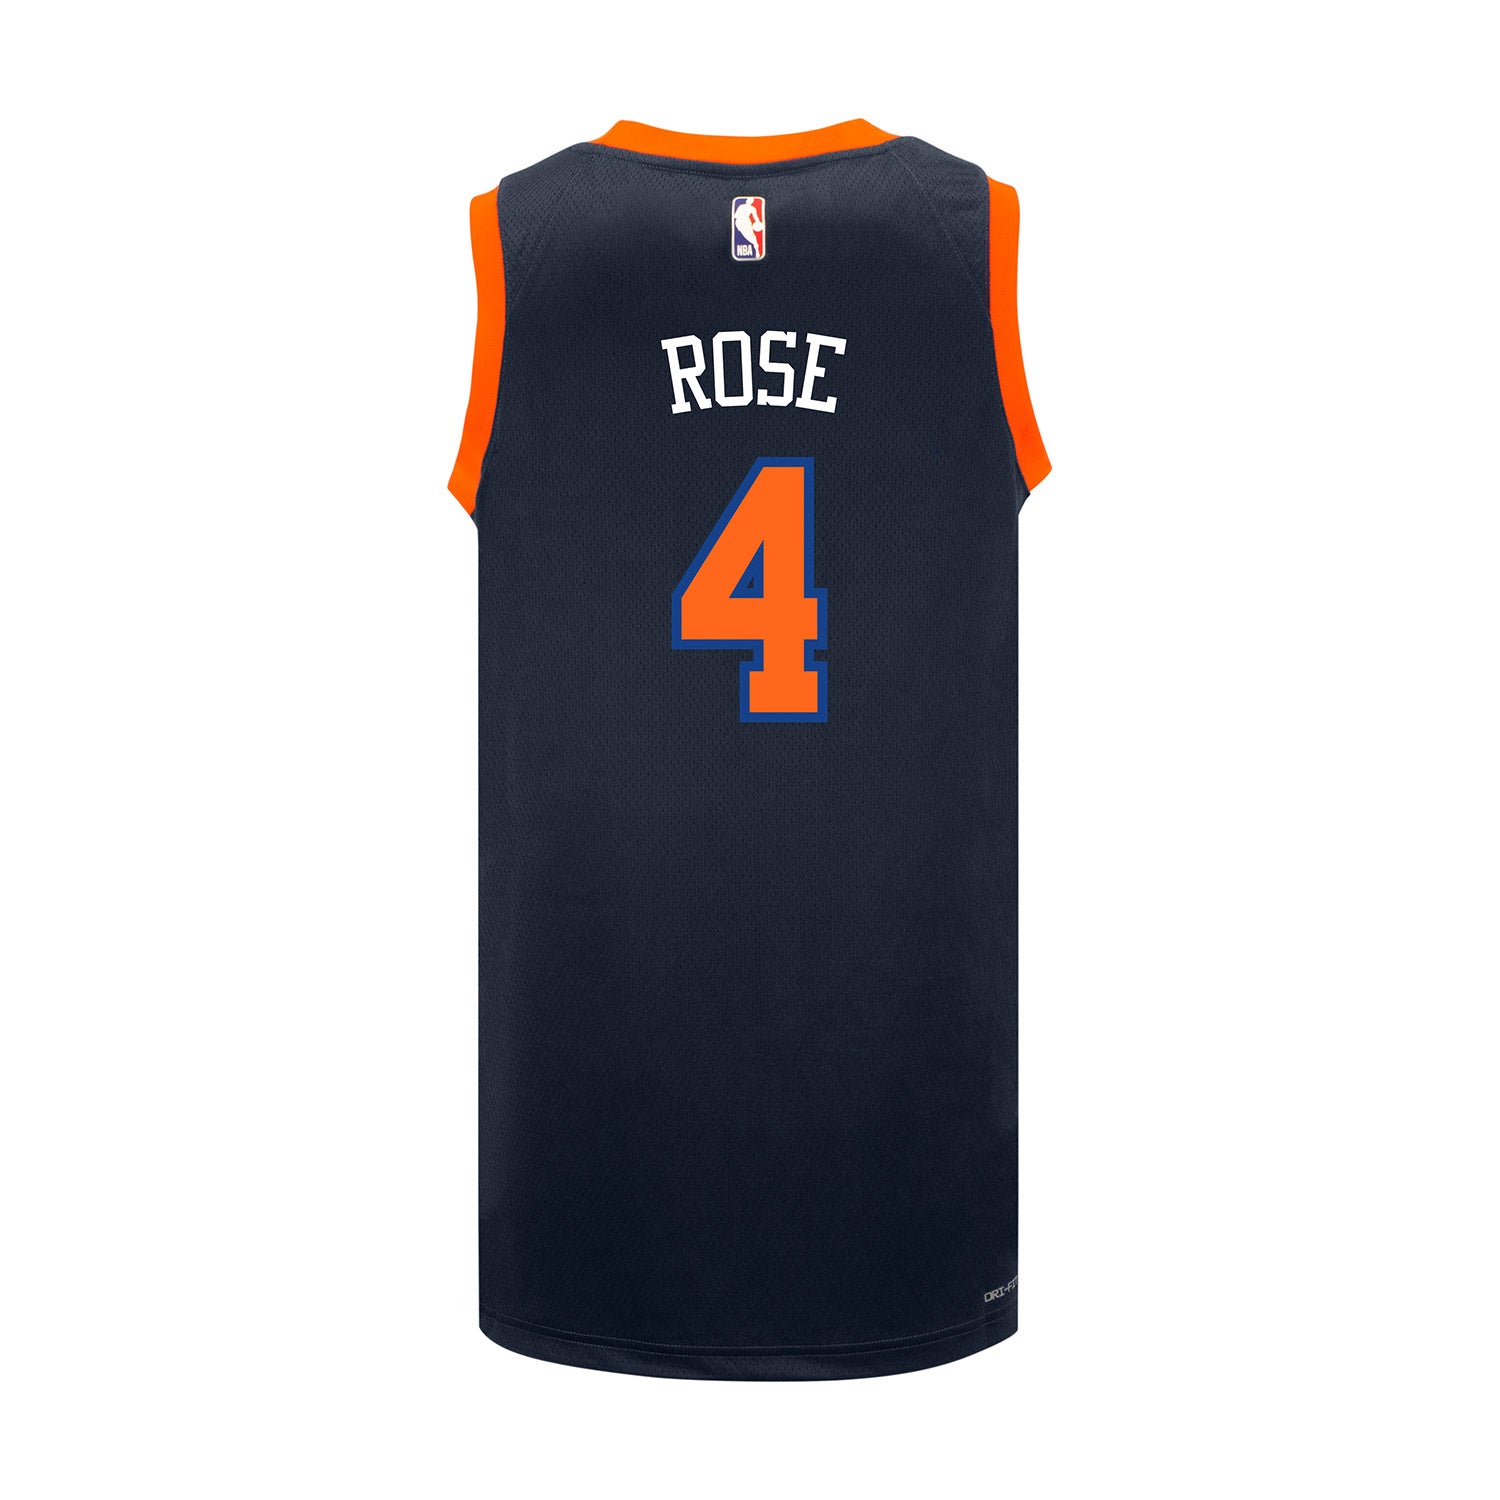 Knicks 22-23 Derrick Rose Statement Swingman Jersey